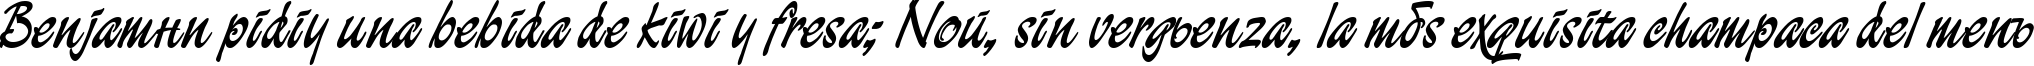 Пример написания шрифтом Demian Cyr  Plain1.0 текста на испанском